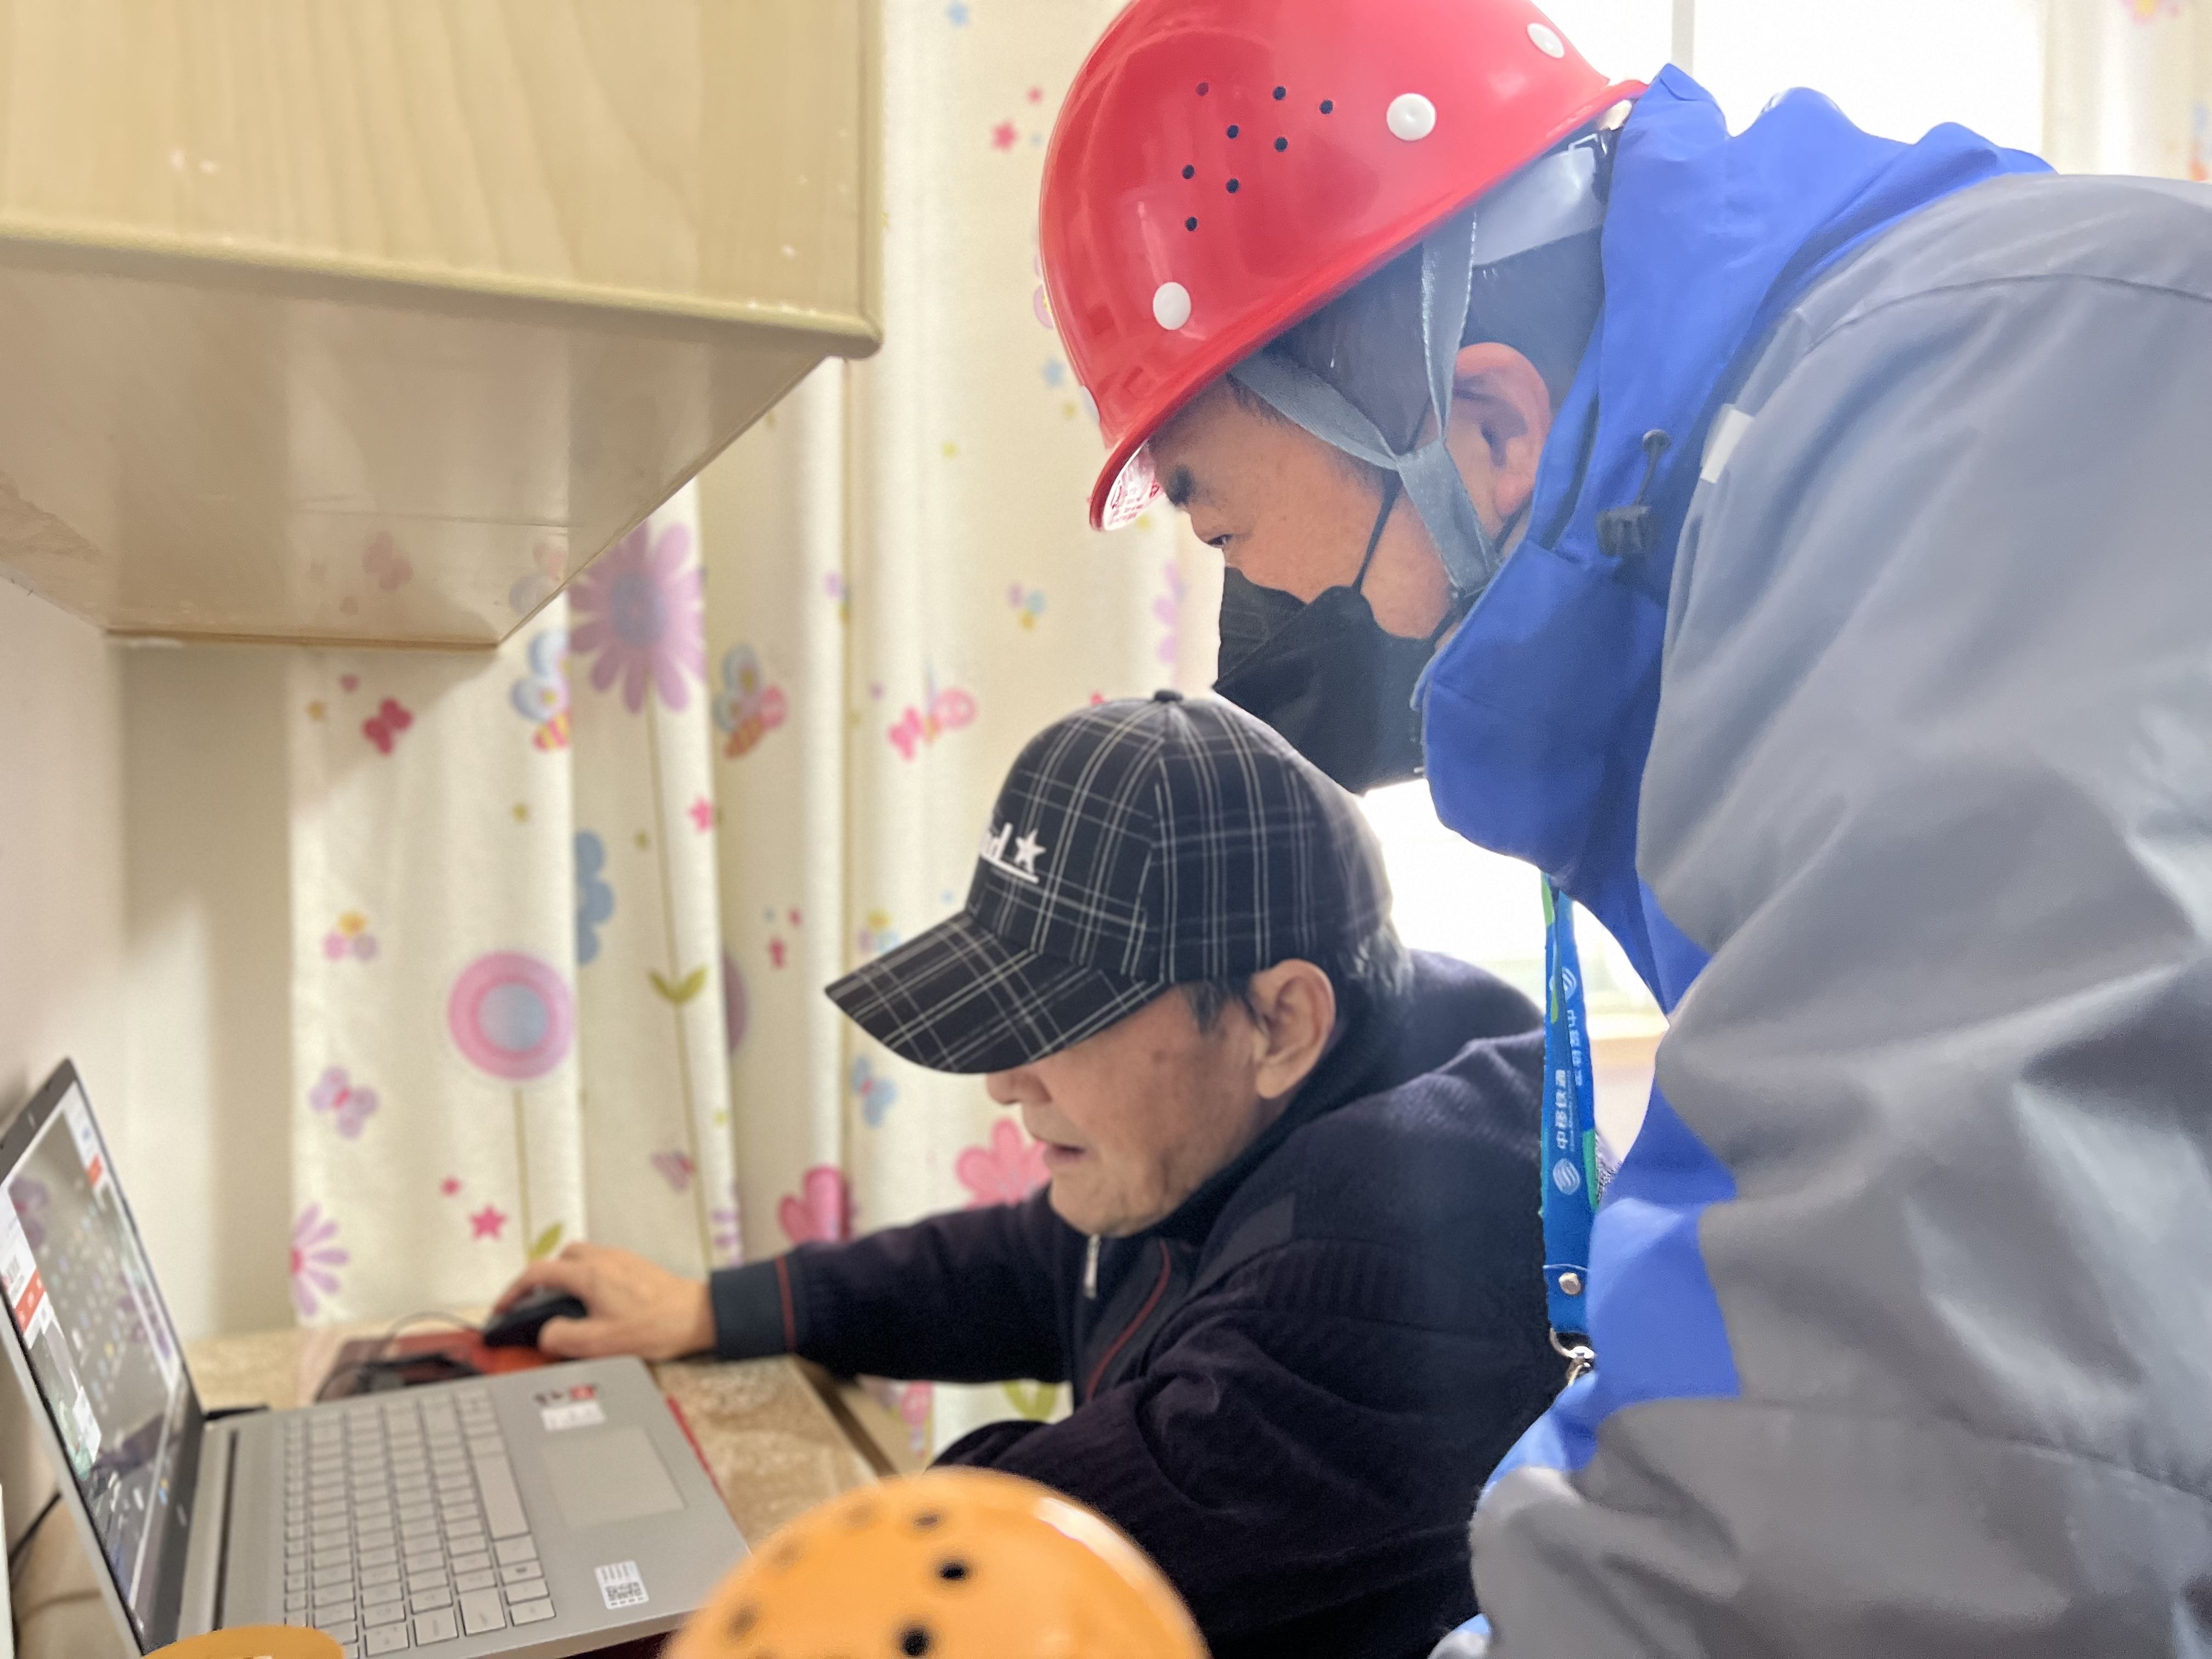 扬州移动装维师傅正在老年用户沈大爷家指导如何操作电脑观看体育赛事。江苏移动供图